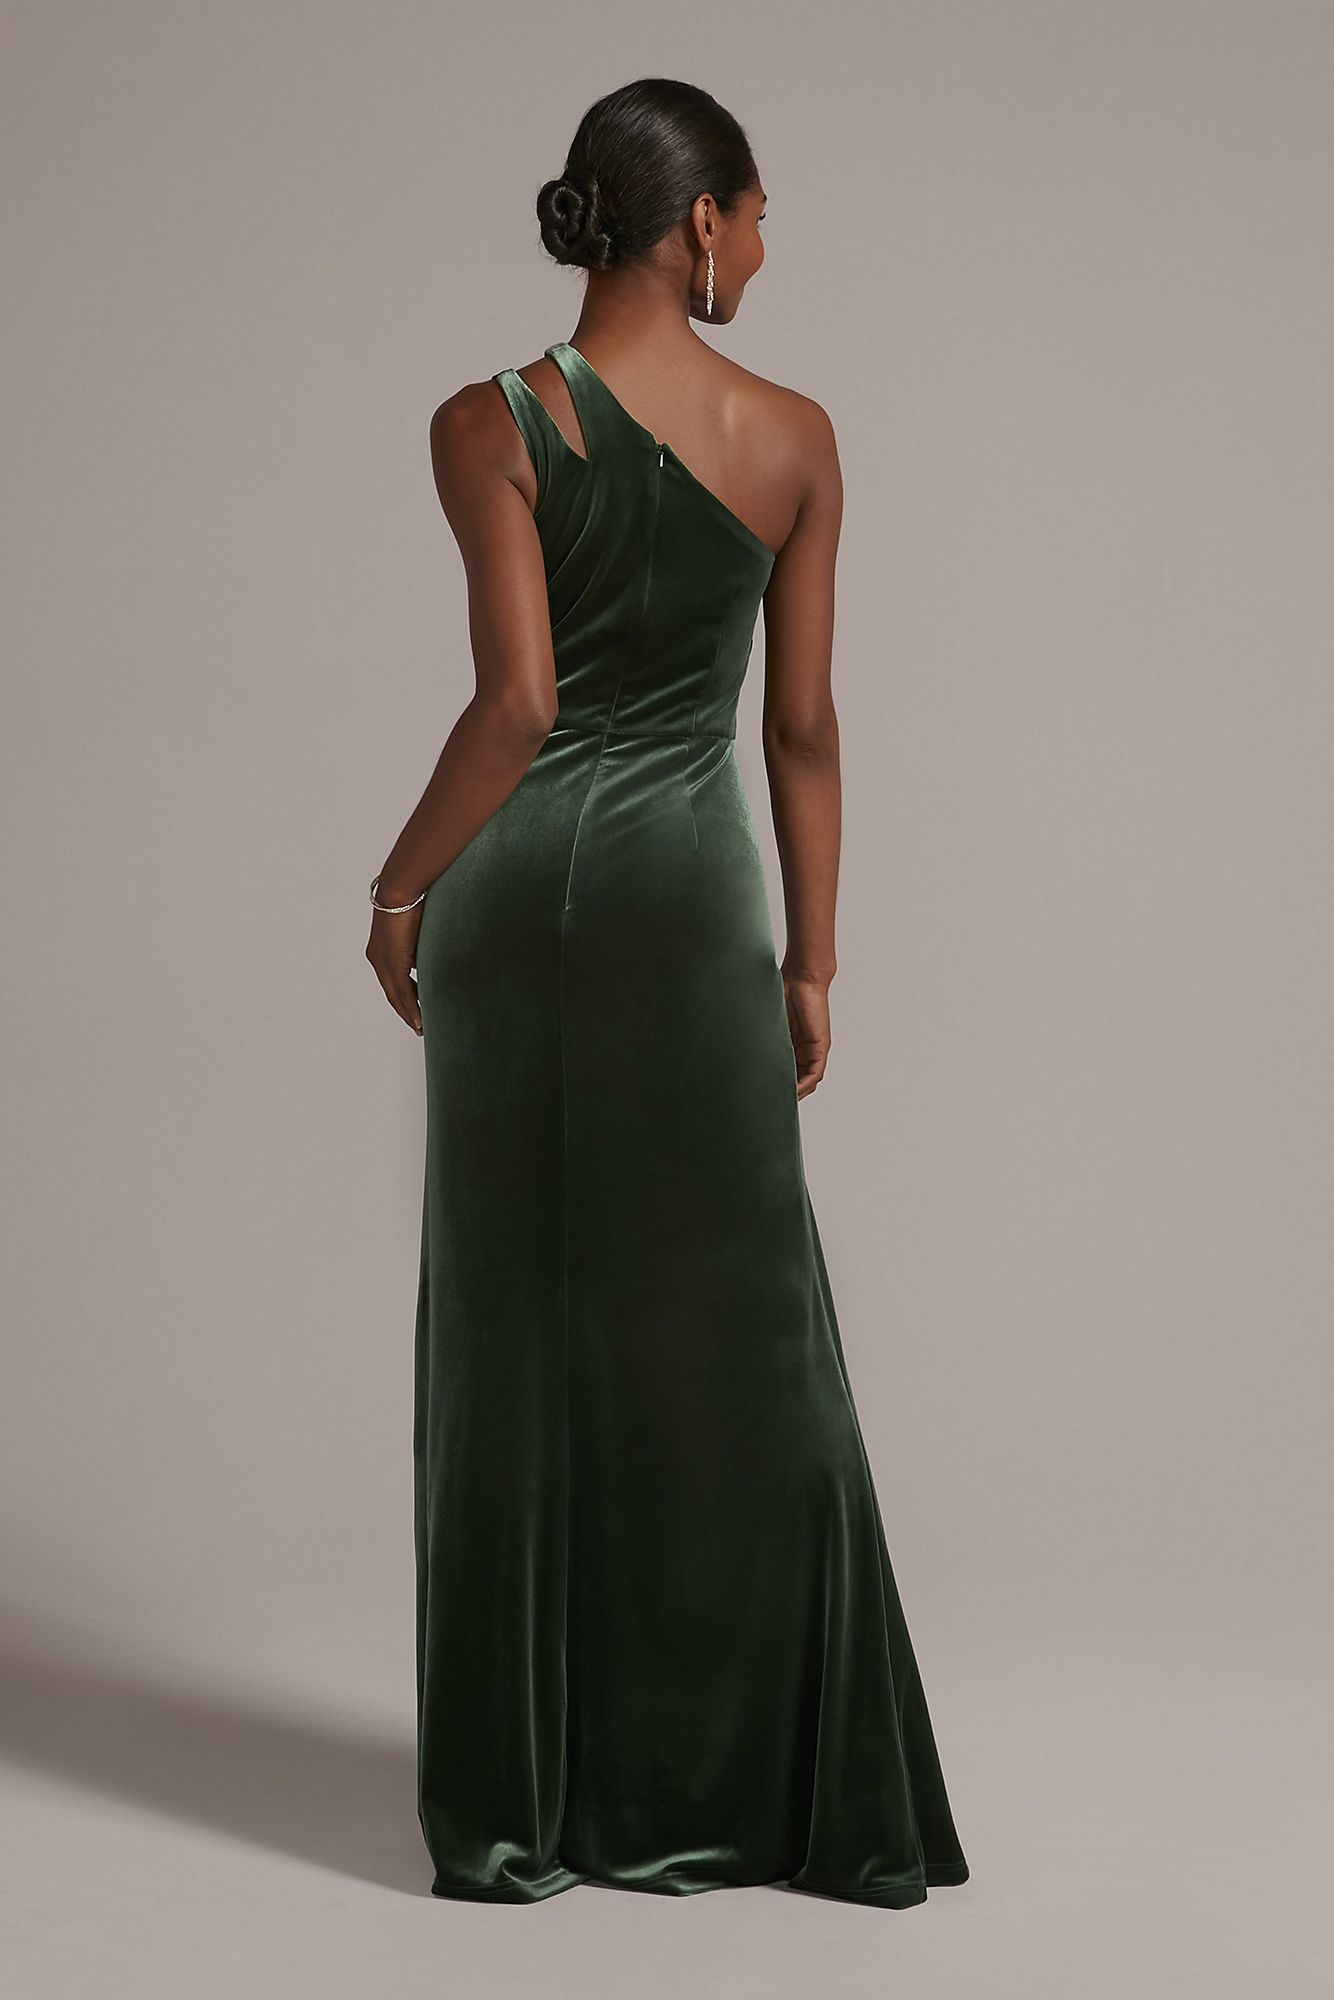 Cutout One-Shoulder Velvet Gown with Skirt Slit WBM2798V1 [WBM2798V1 ...